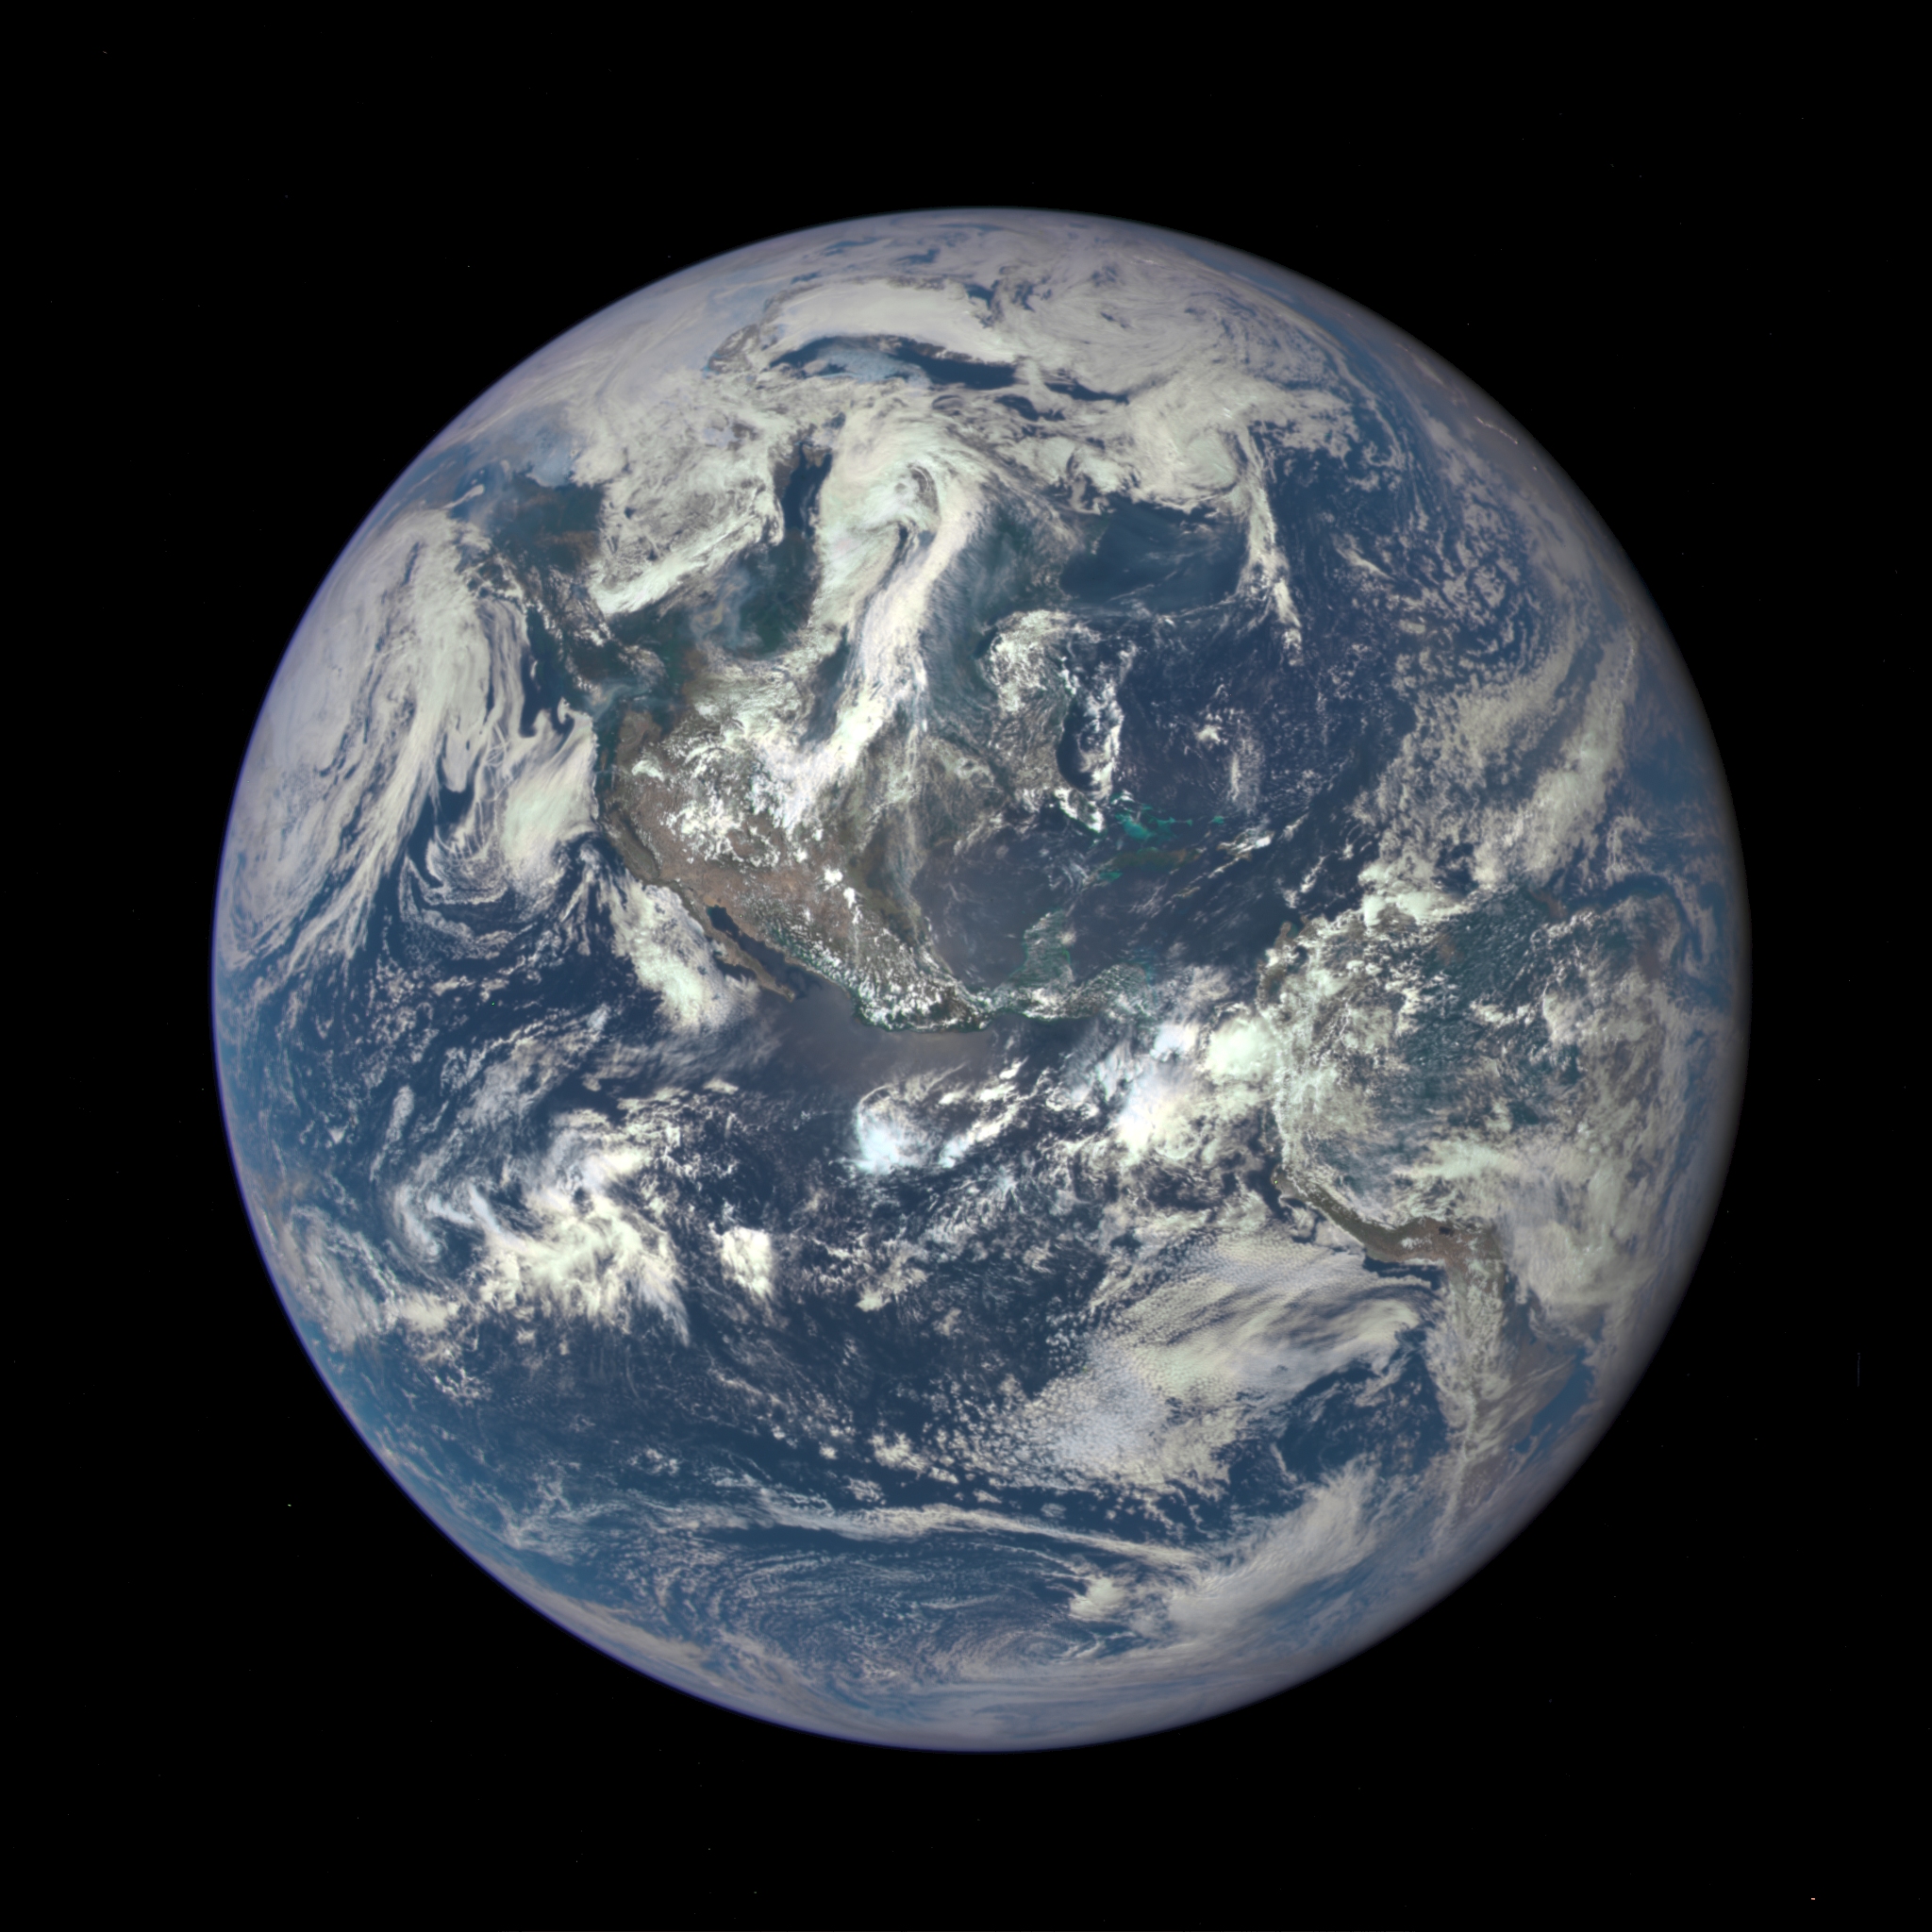 La Terre photographiée le 6 juillet 2015 par l'instrument Epic du satellite DSCOVR (Deep Space Climate Observatory) à une distance de 1,5 million de kilomètres. © Nasa, NOAA